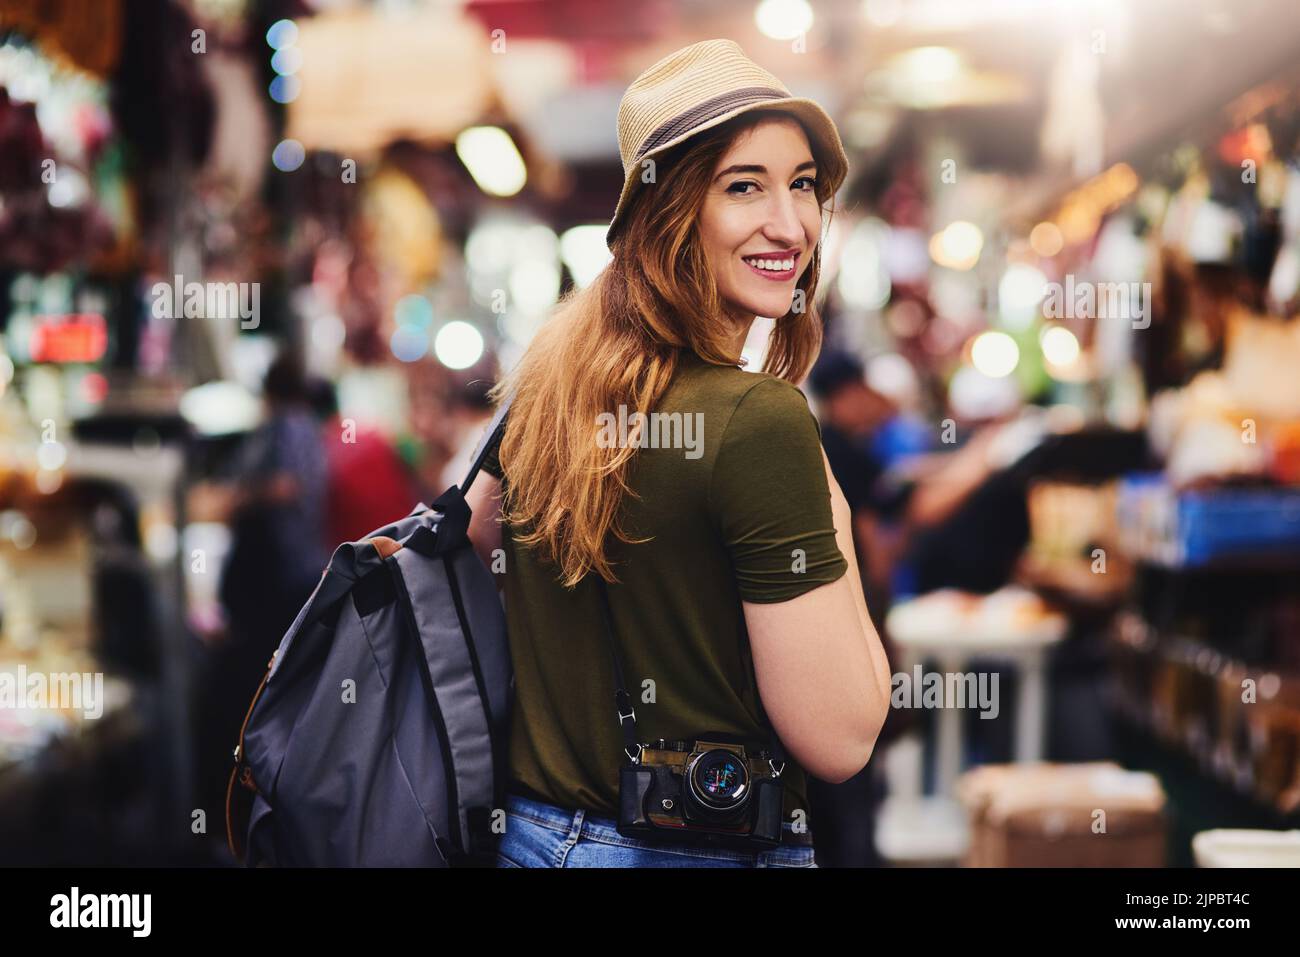 Comment puis-je regarder. Une jeune femme joyeuse marchant dans un marché très occupé dehors pendant la journée. Banque D'Images